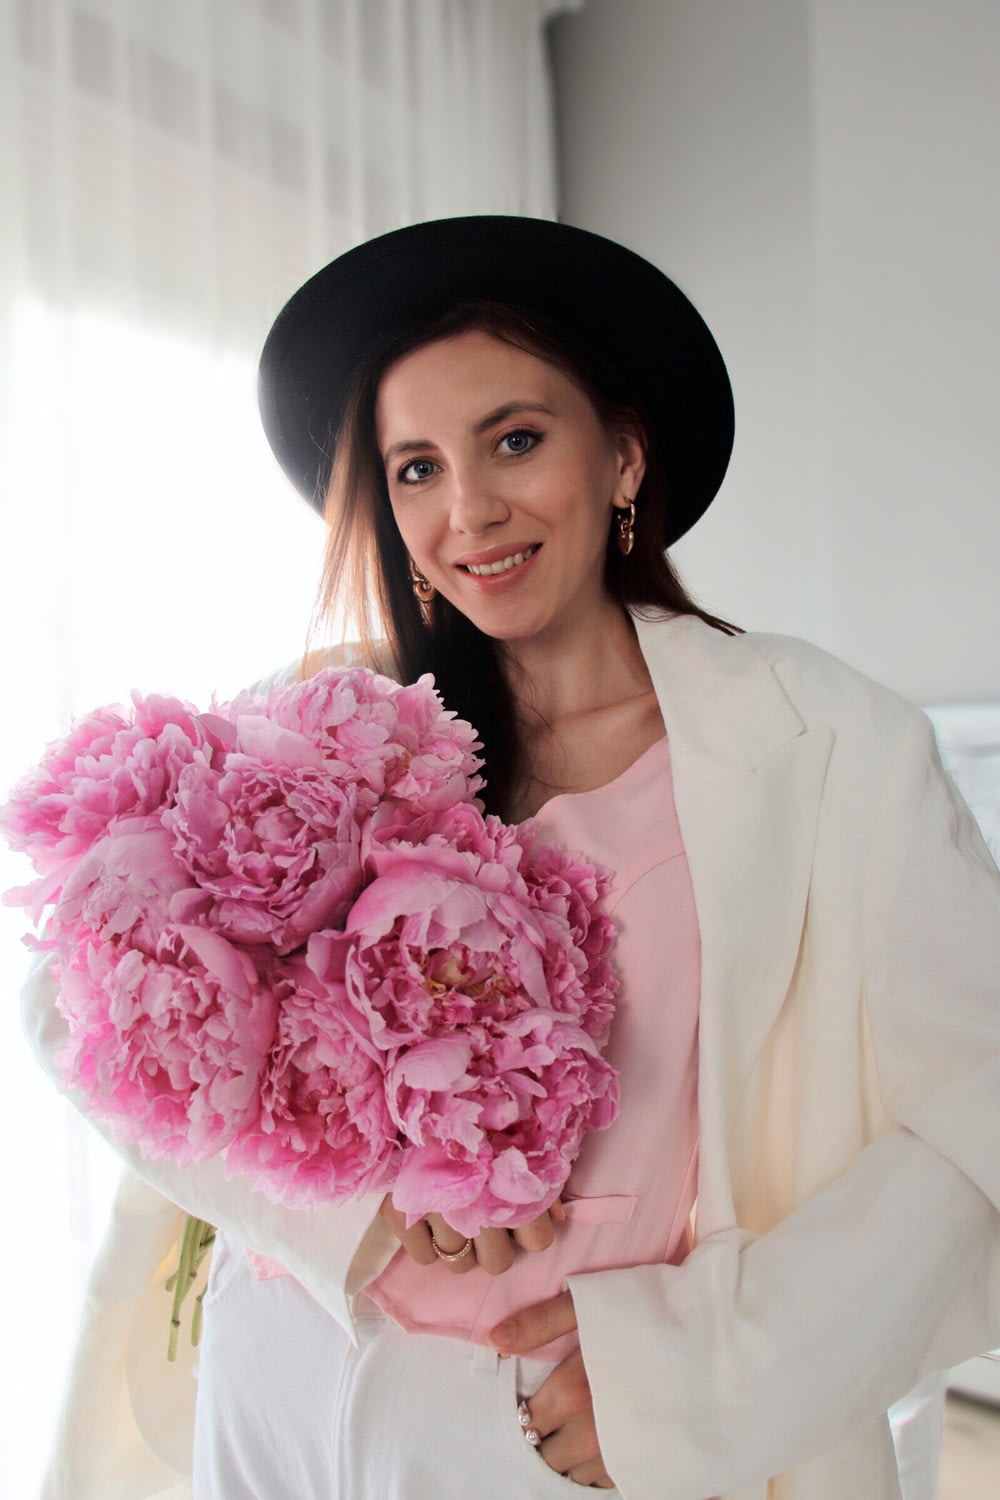 Une femme coiffée d’un chapeau tenant un bouquet de fleurs